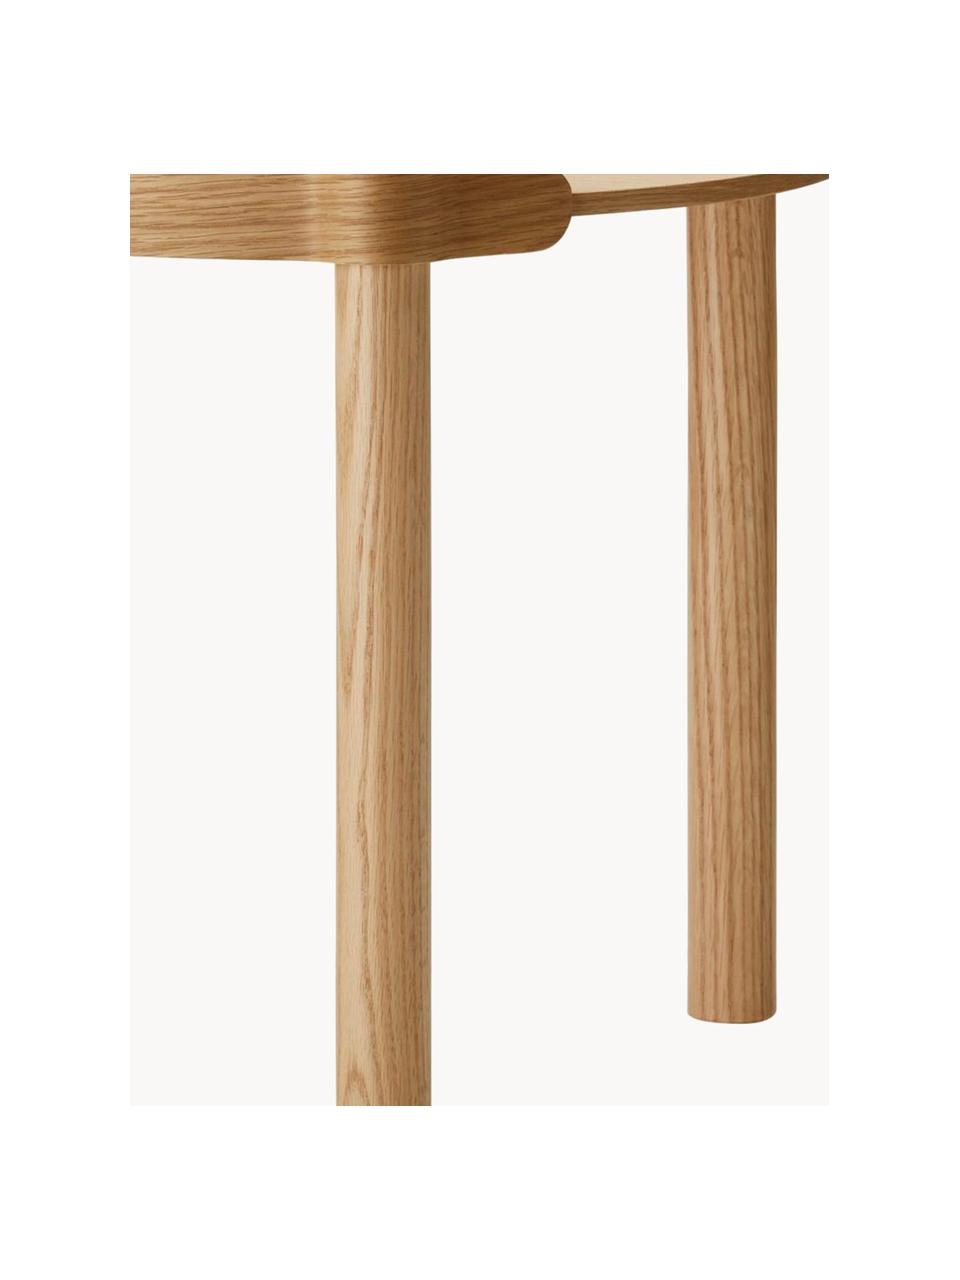 Runder Beistelltisch Woody aus Eichenholz, Eichenholz

Dieses Produkt wird aus nachhaltig gewonnenem, FSC®-zertifiziertem Holz gefertigt., Eichenholz, Ø 45 x H 44 cm